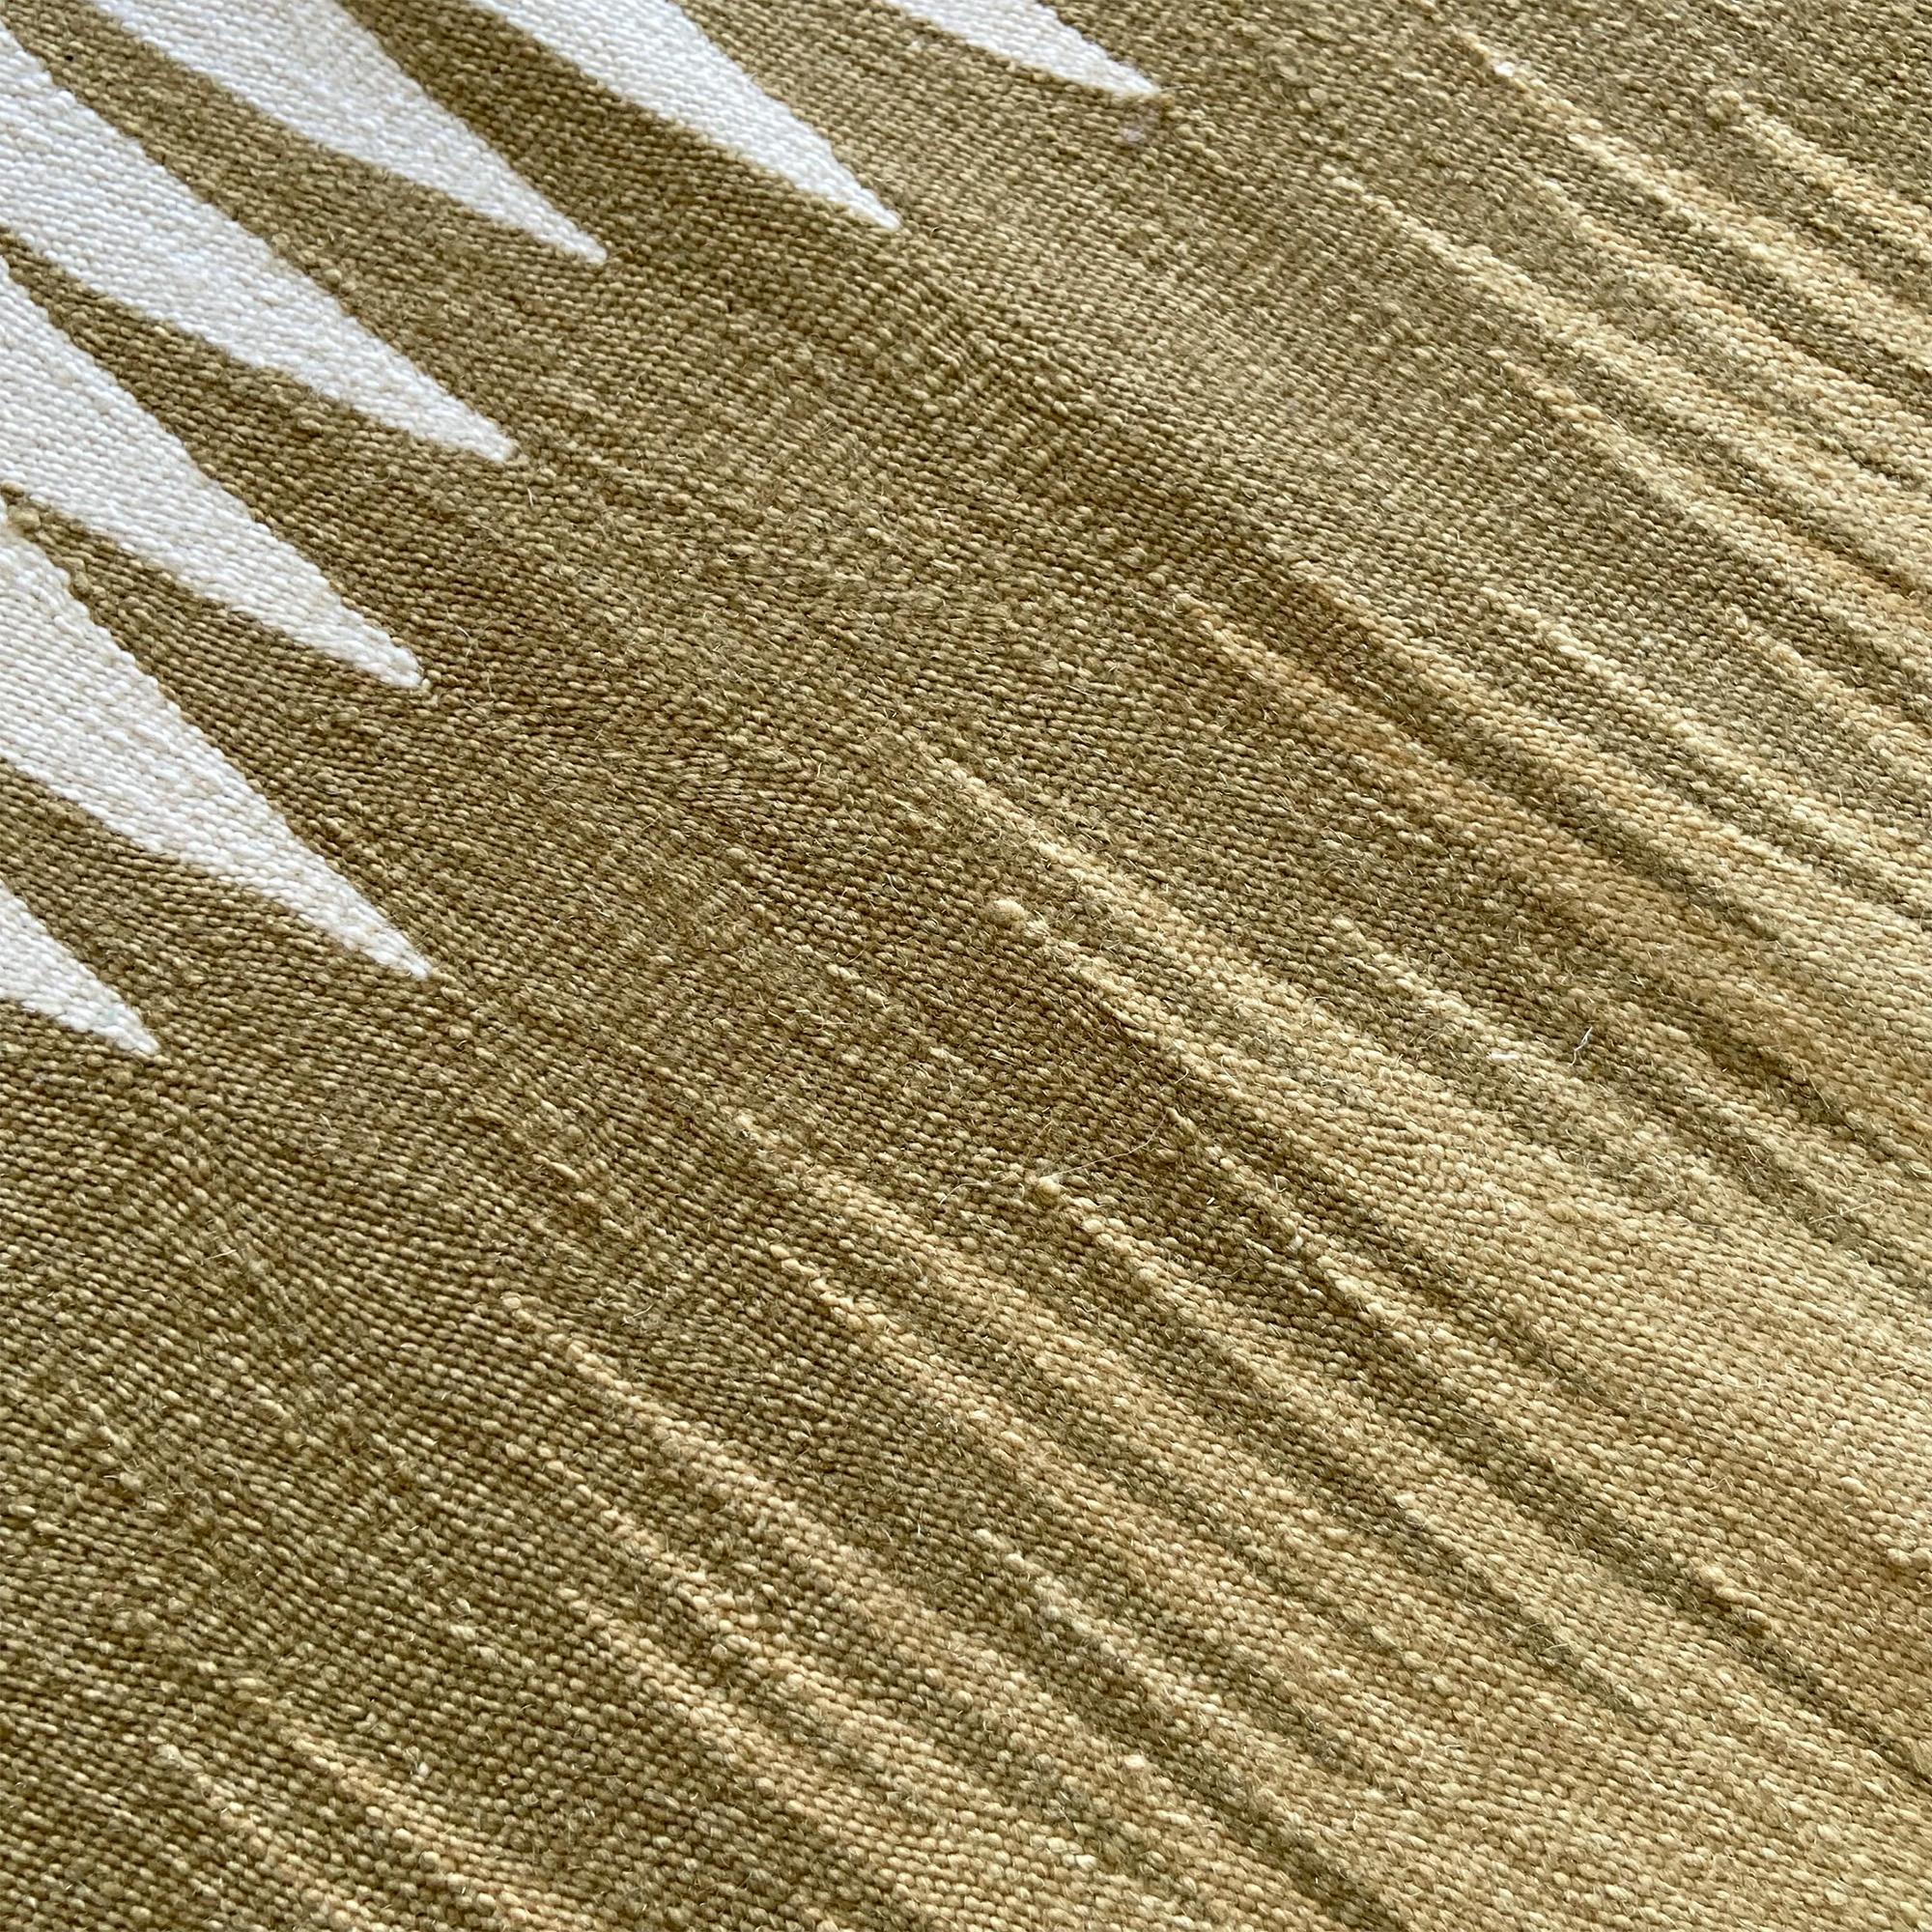 Der Kelimteppich Yakamoz No 4 gehört zu einer Serie von Kelims, die von der Poesie der Lichtreflexe auf der Meeresoberfläche inspiriert sind. Die abstrakten Muster, die an wechselnde Farbübergänge durch reflektiertes Licht erinnern, werden von